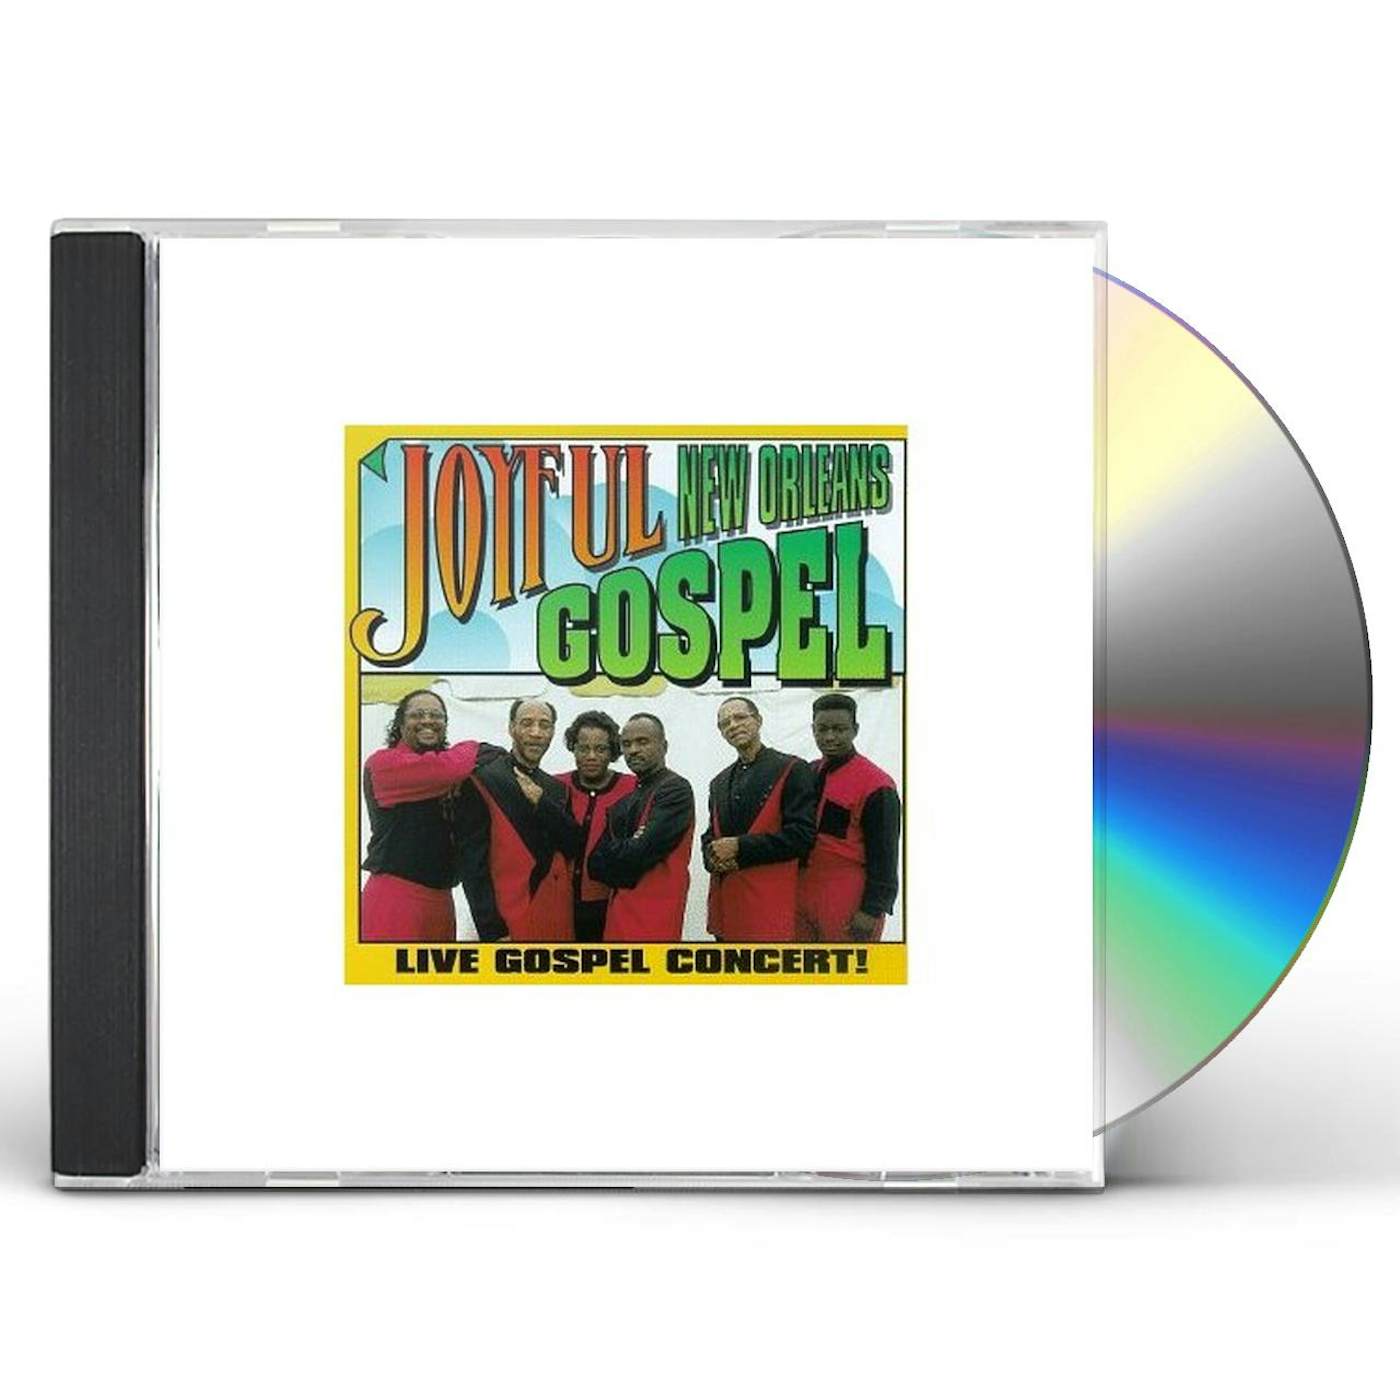 Joyful NEW ORLEANS GOSPEL CD